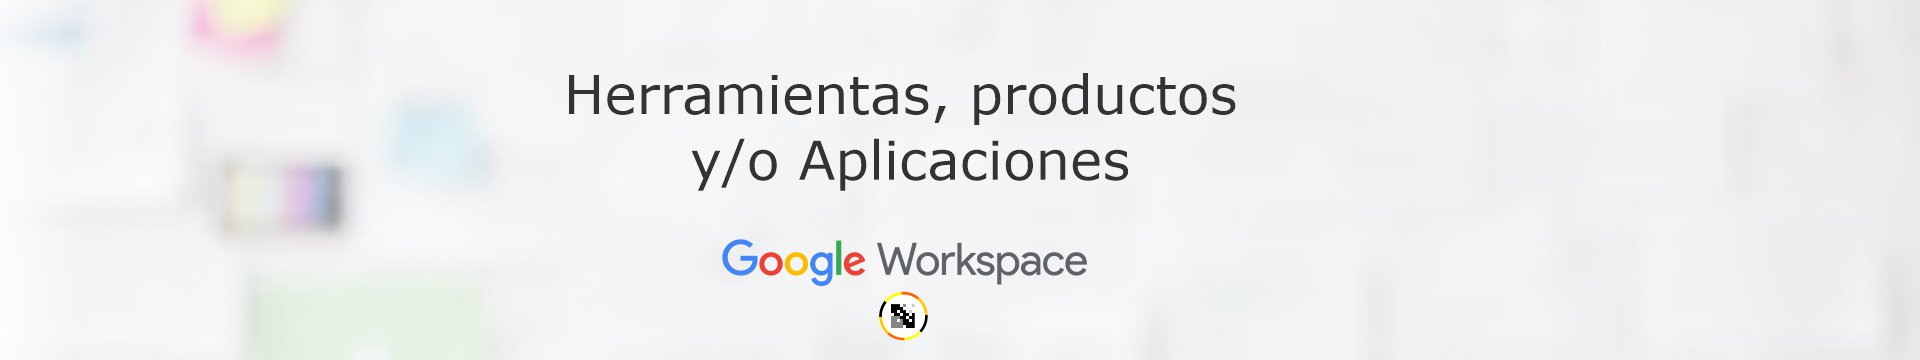 Productos o Aplicaciones incluidas dentro de Google Workspace